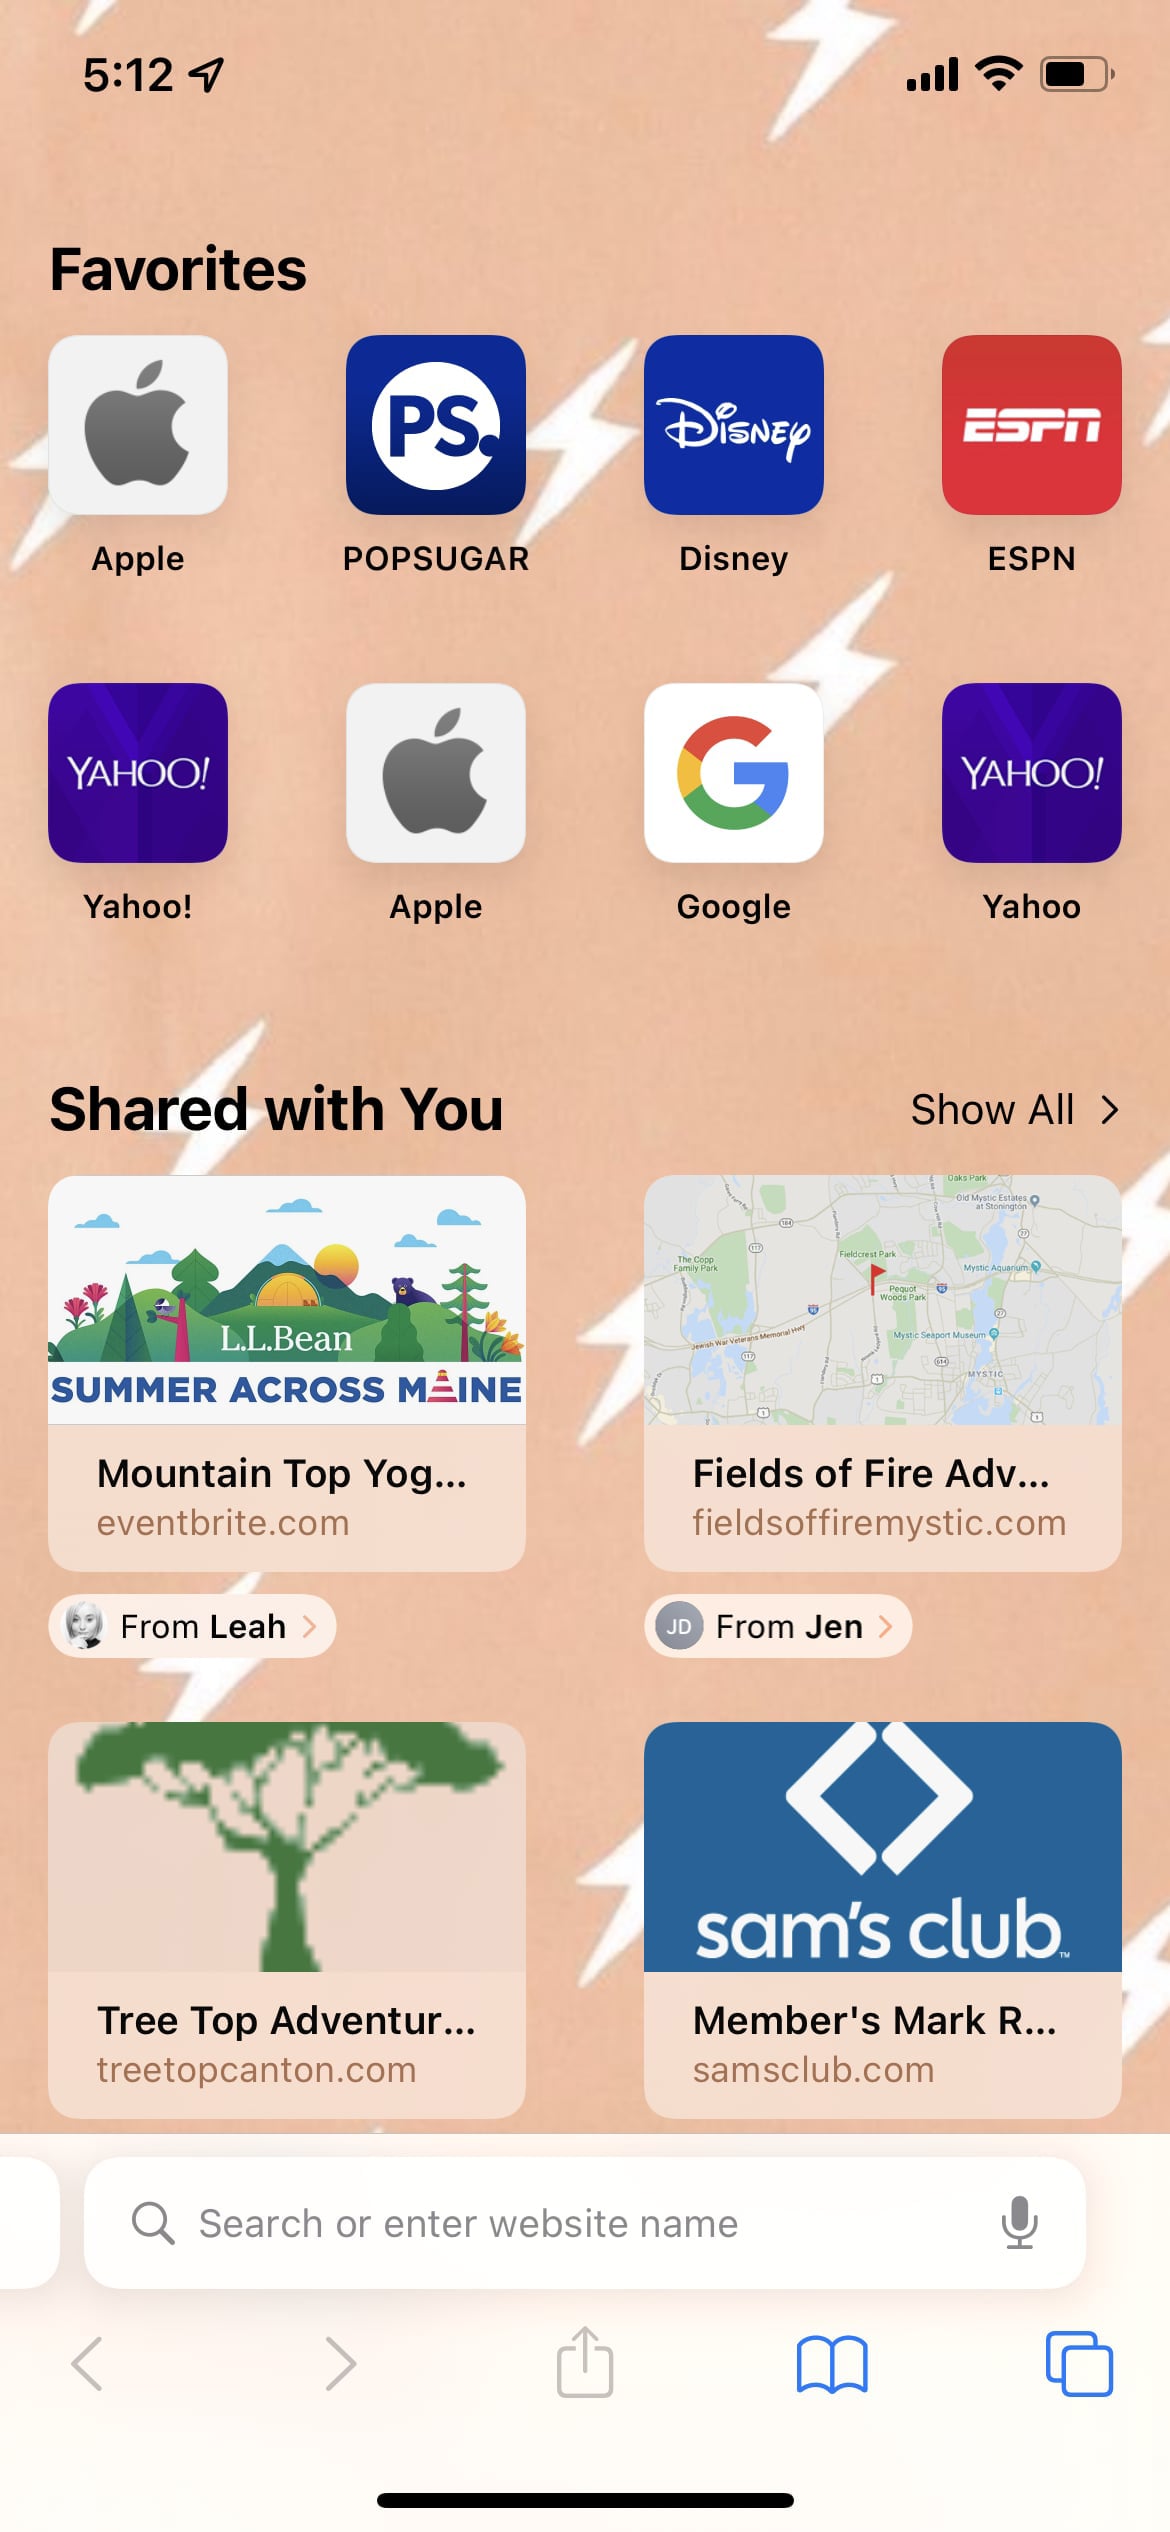 Safari là trình duyệt web mặc định trên iPhone. Vậy tại sao bạn không cập nhật hình nền Safari để đi theo phong cách của bạn? Hãy xem ngay các tùy chọn hình nền Safari từ chúng tôi để có trải nghiệm duyệt web tuyệt vời hơn! 